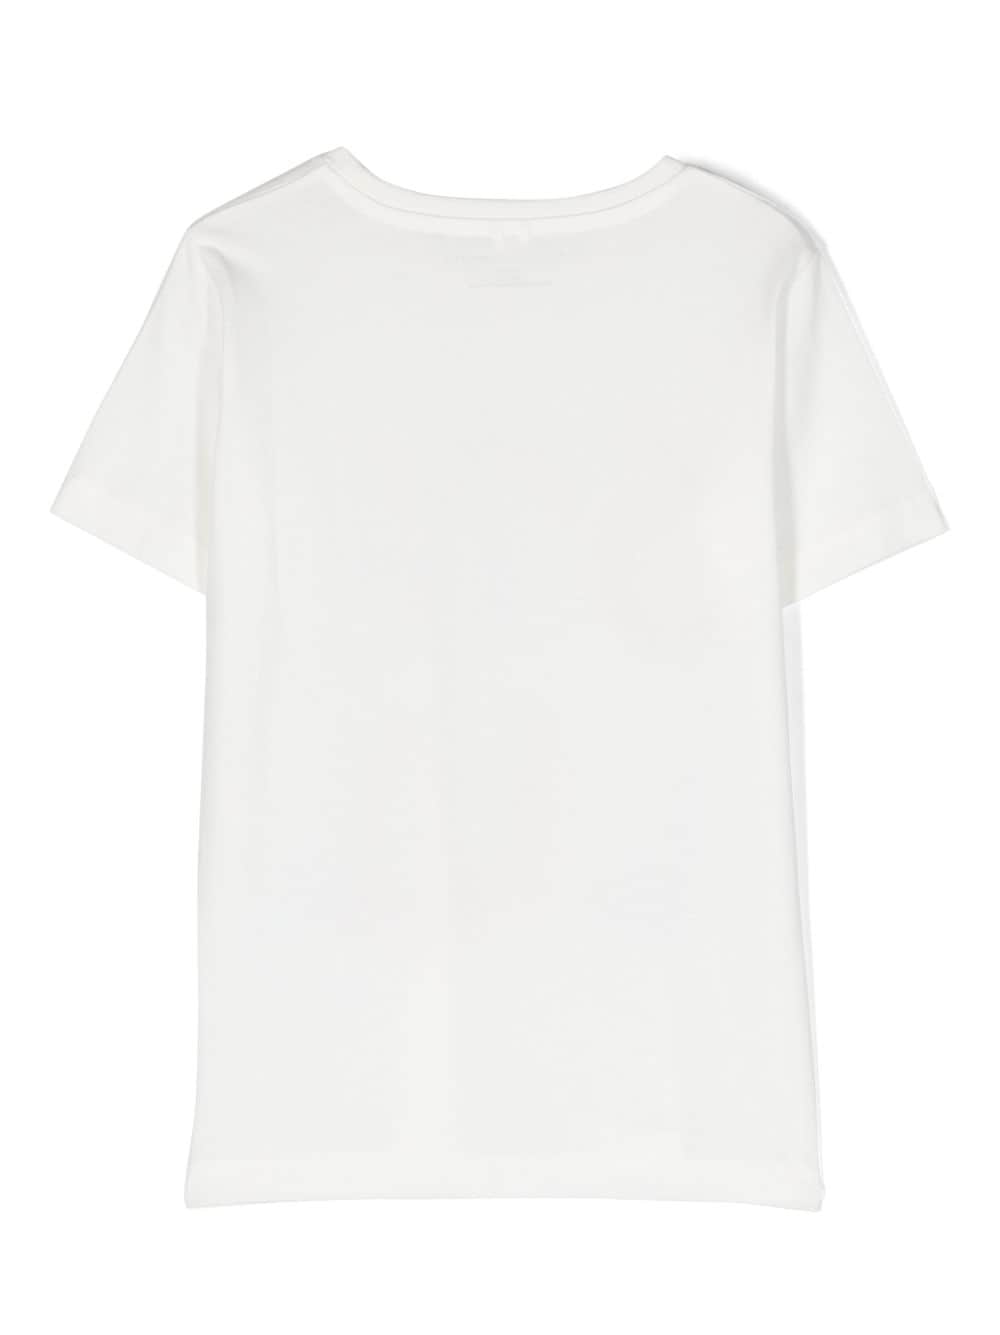 Stella McCartney Kids logo-print Cotton T-shirt - Farfetch